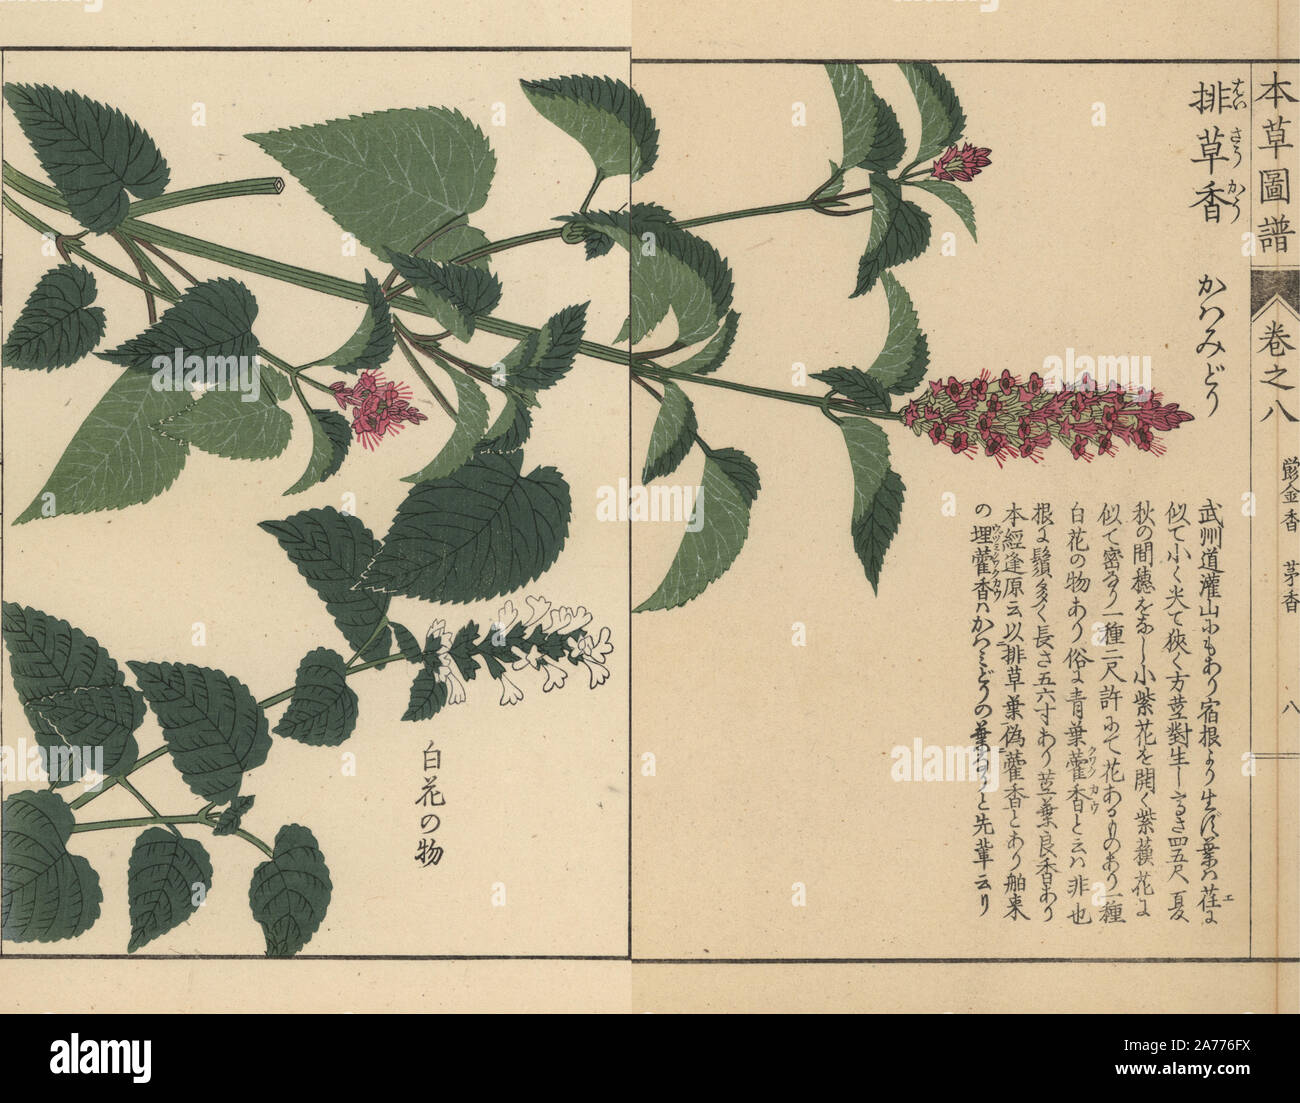 Il coreano menta, Agastache rugosa (Lophanthus rugoso Fisch.) e anice issopo, Agastache foeniculum (Lophanthus anisatus). Stampato a colori woodblock incisione di Kan'en Iwasaki da 'Honzo Zufu", una guida illustrata per piante medicinali, Giappone, 1884. La Iwasaki (1786-1842) era un giapponese botanico, entomologo e zoologo. Egli è stato uno dei primi botanici giapponesi per incorporare la conoscenza occidentale nei suoi studi. Foto Stock